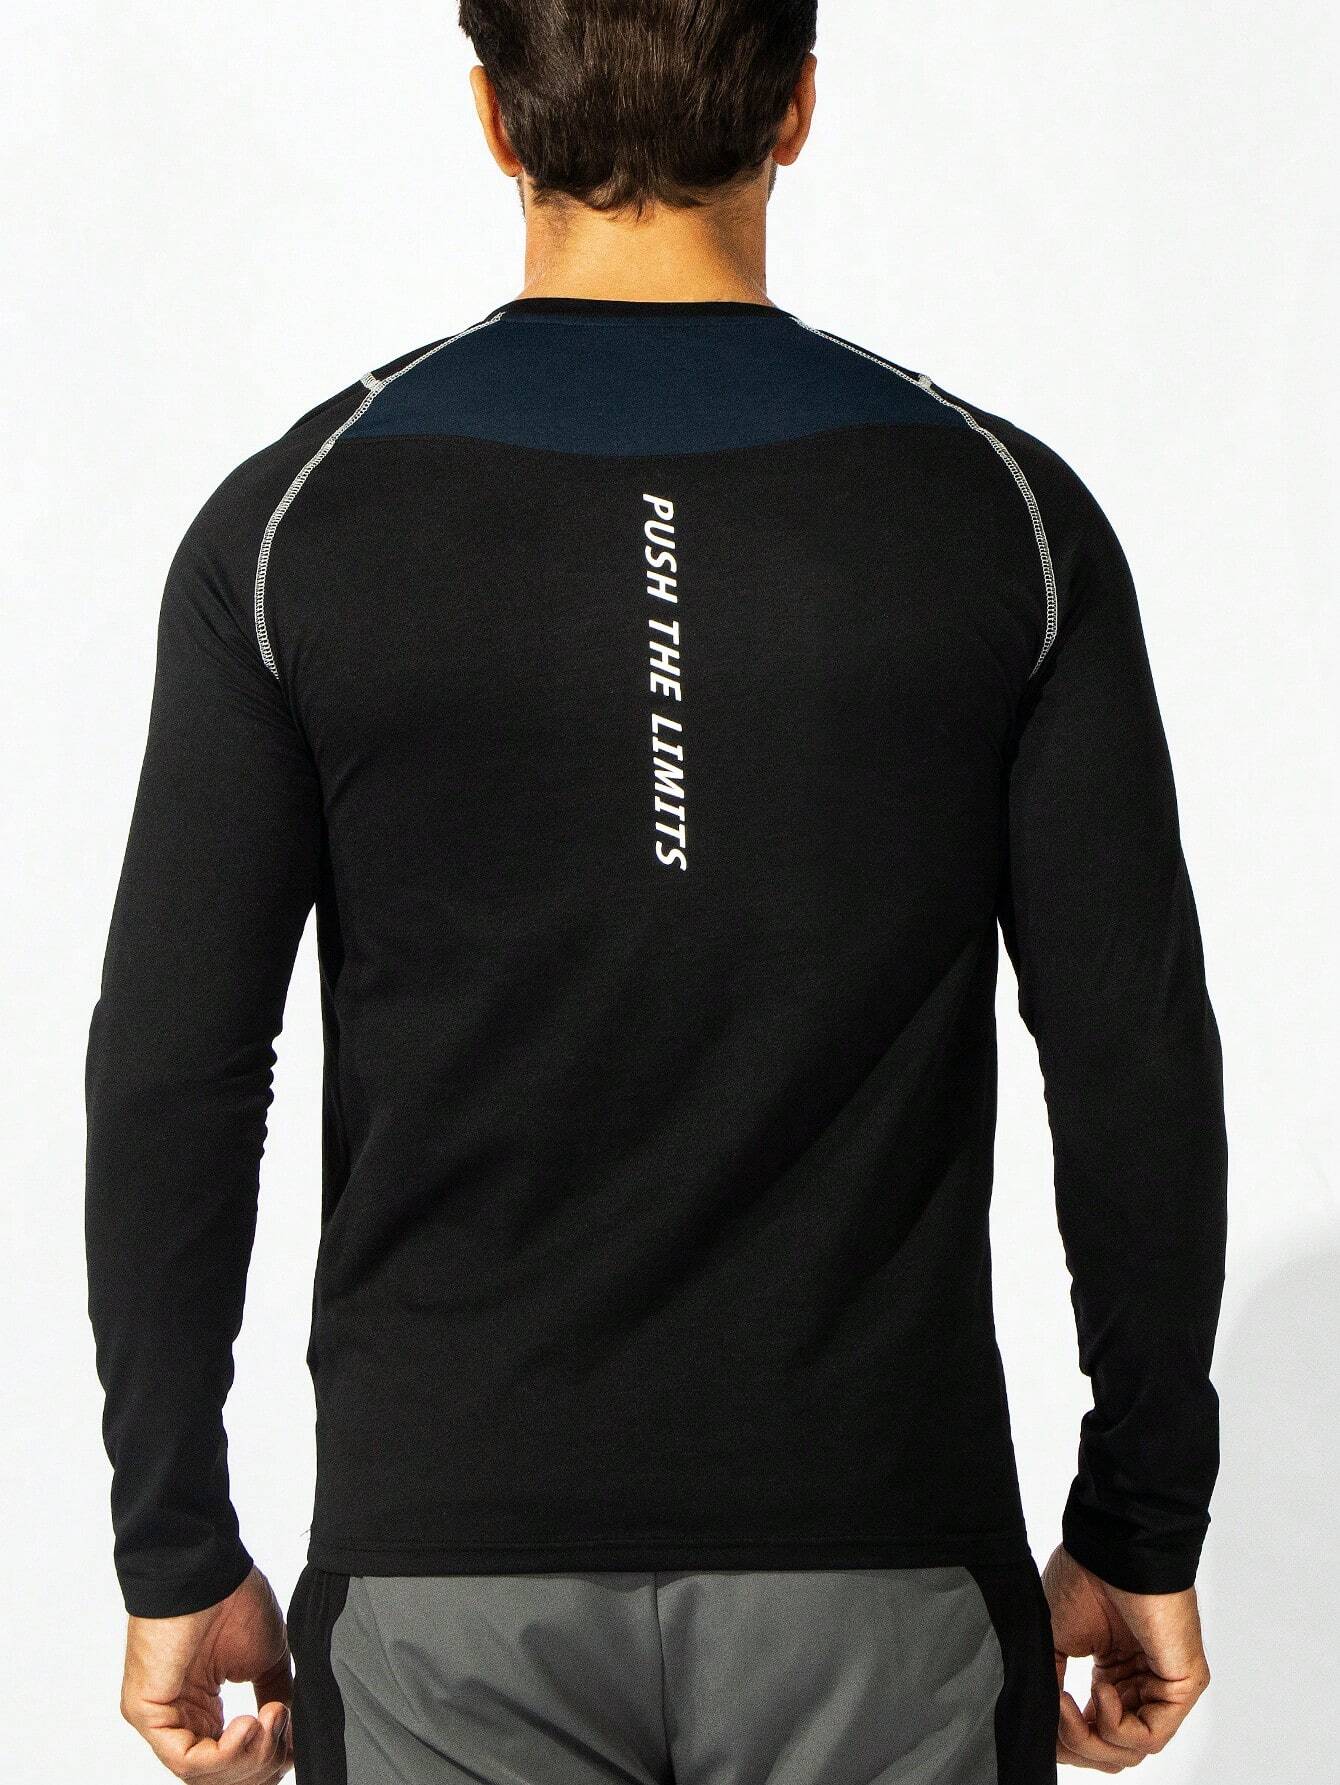 4357 a06-12 Hombres Camiseta deportiva con estampado de letra con puntada